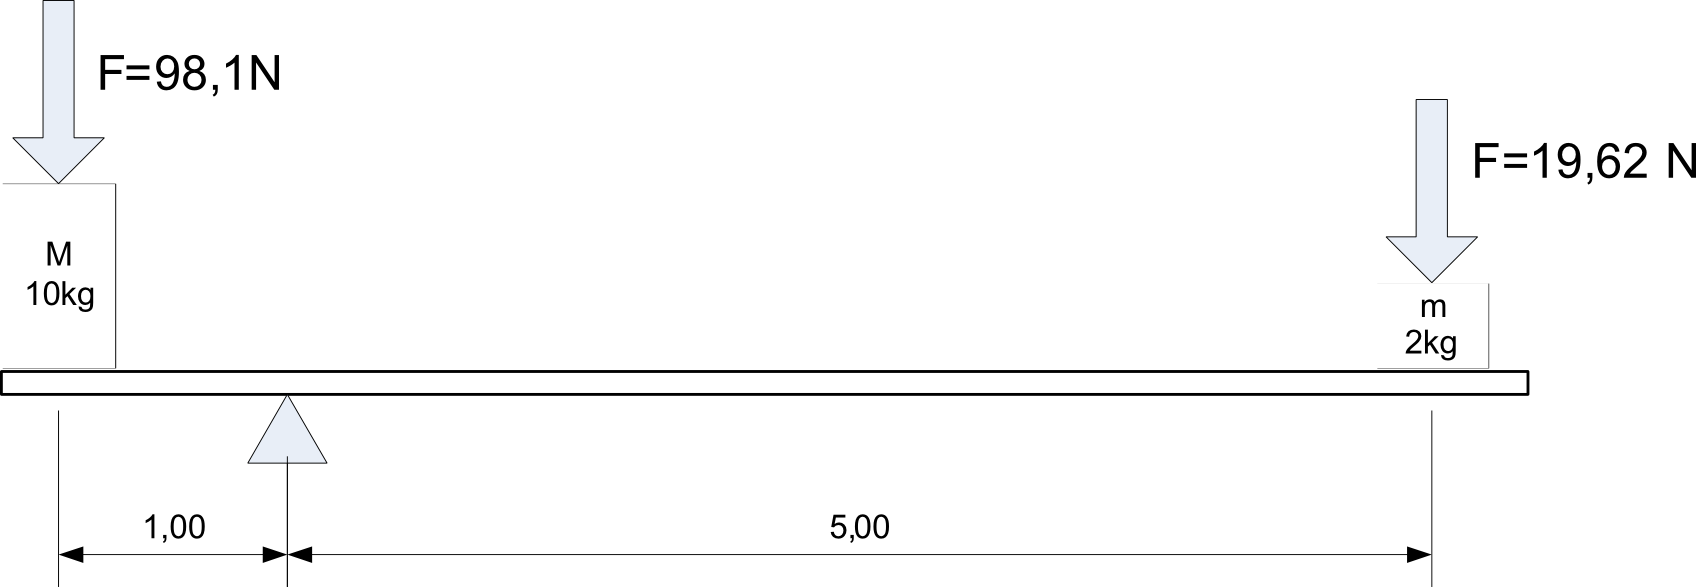 Imagen de una palanca en equilibrio con una masa de 10 kg separada 1 m del punto de apoyo y otra masa de 2kg separada 5m del punto de apoyo.